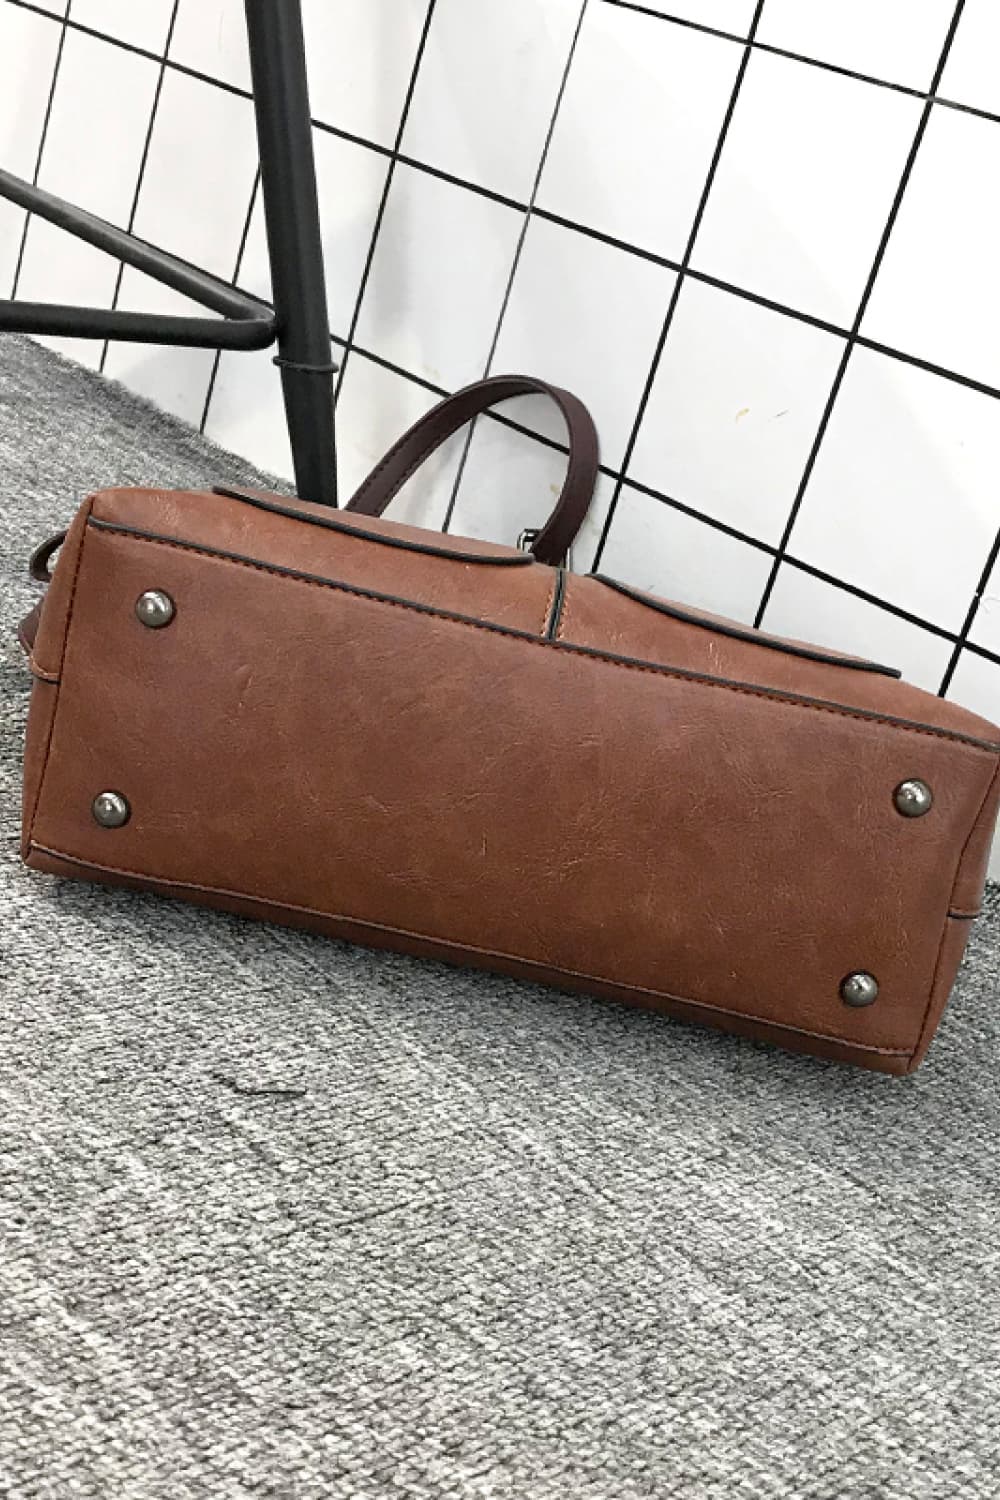 Vintage PU Leather Handbag